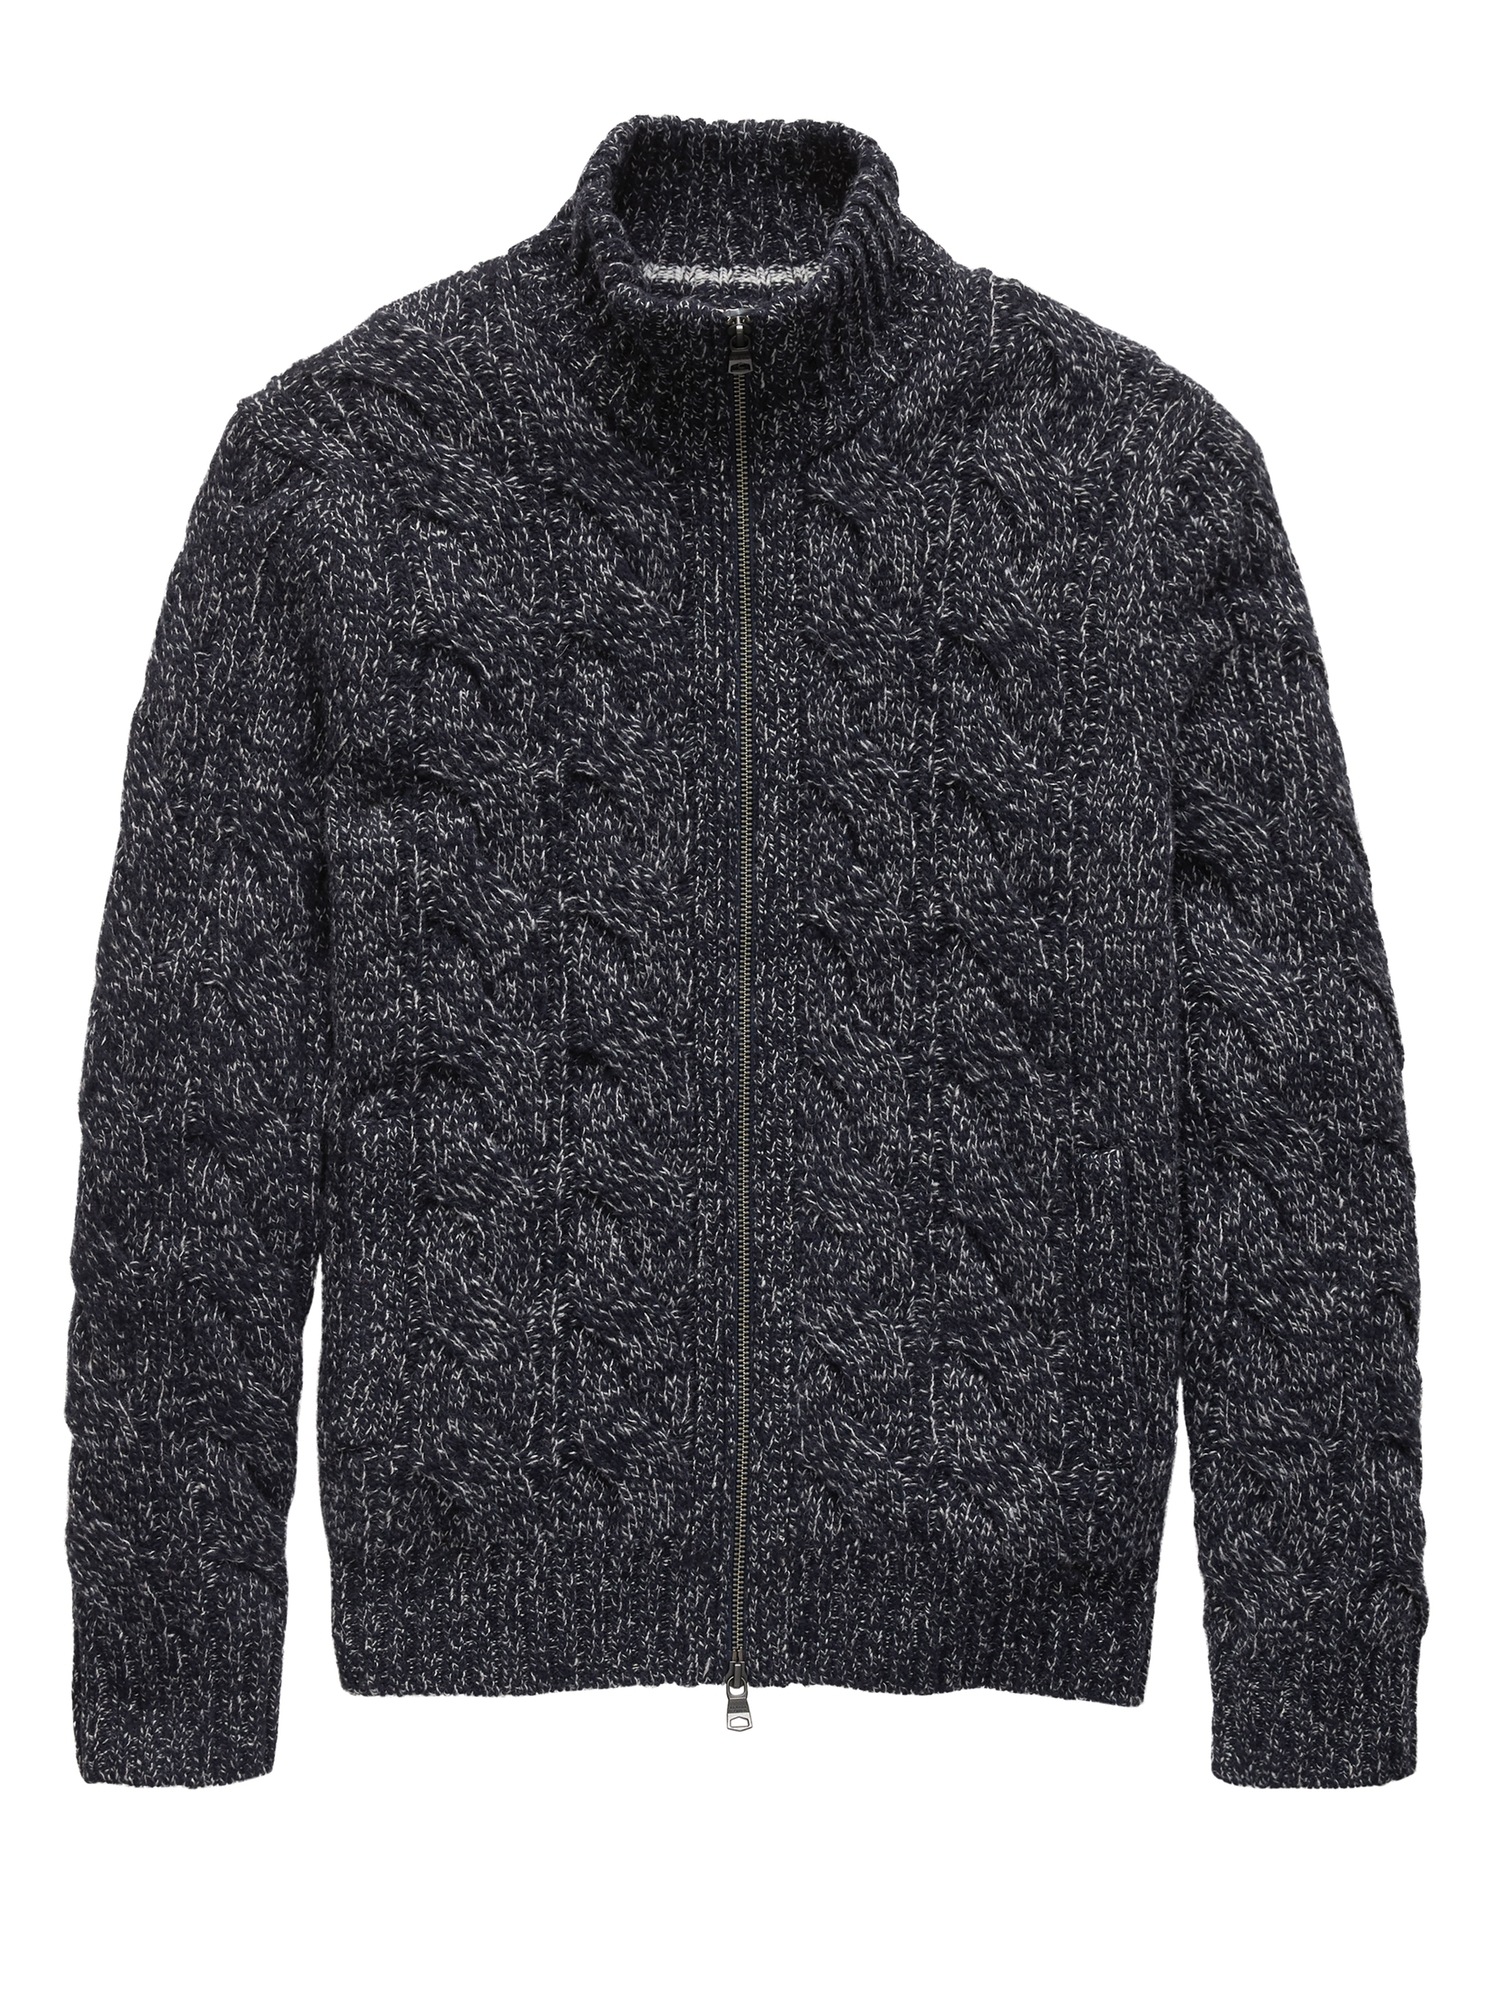 Marled Sweater Jacket